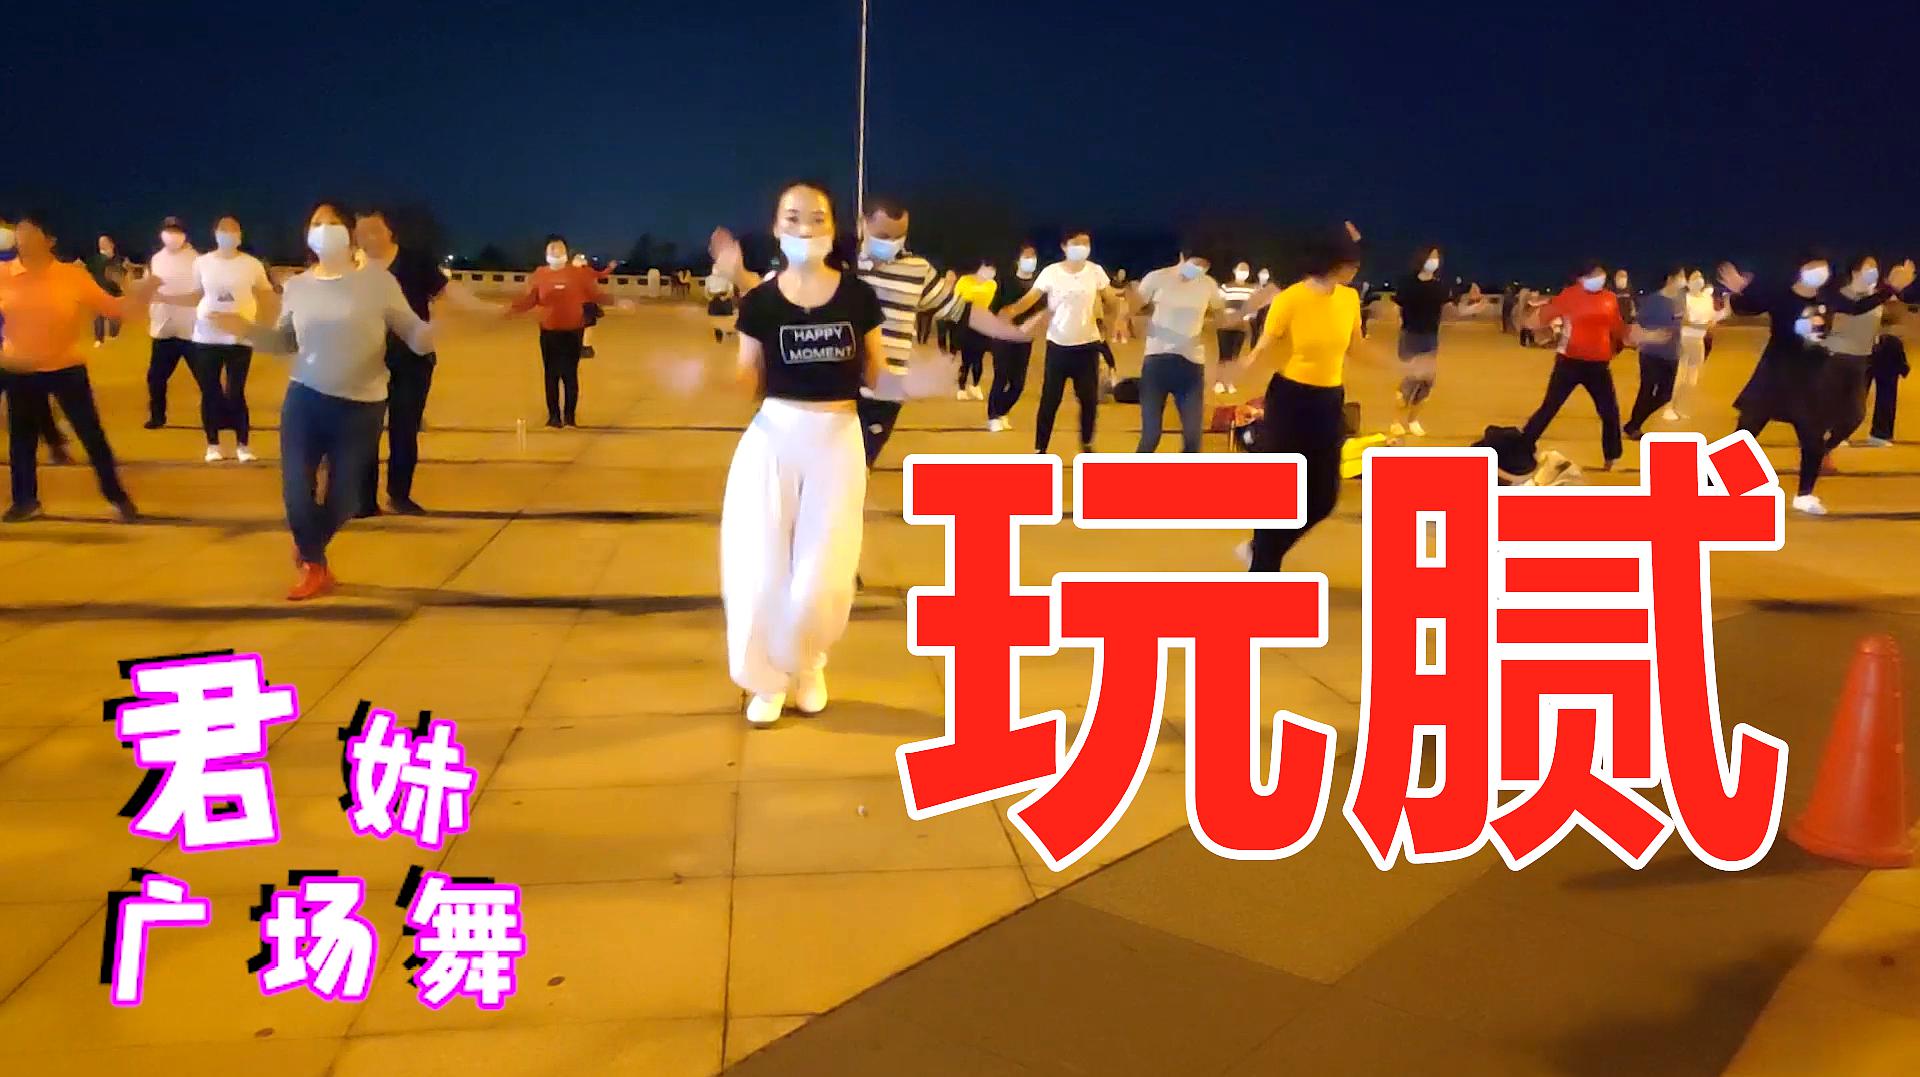 动感流行广场舞《玩腻》时尚DJ版,每天跳跳健康又快乐!